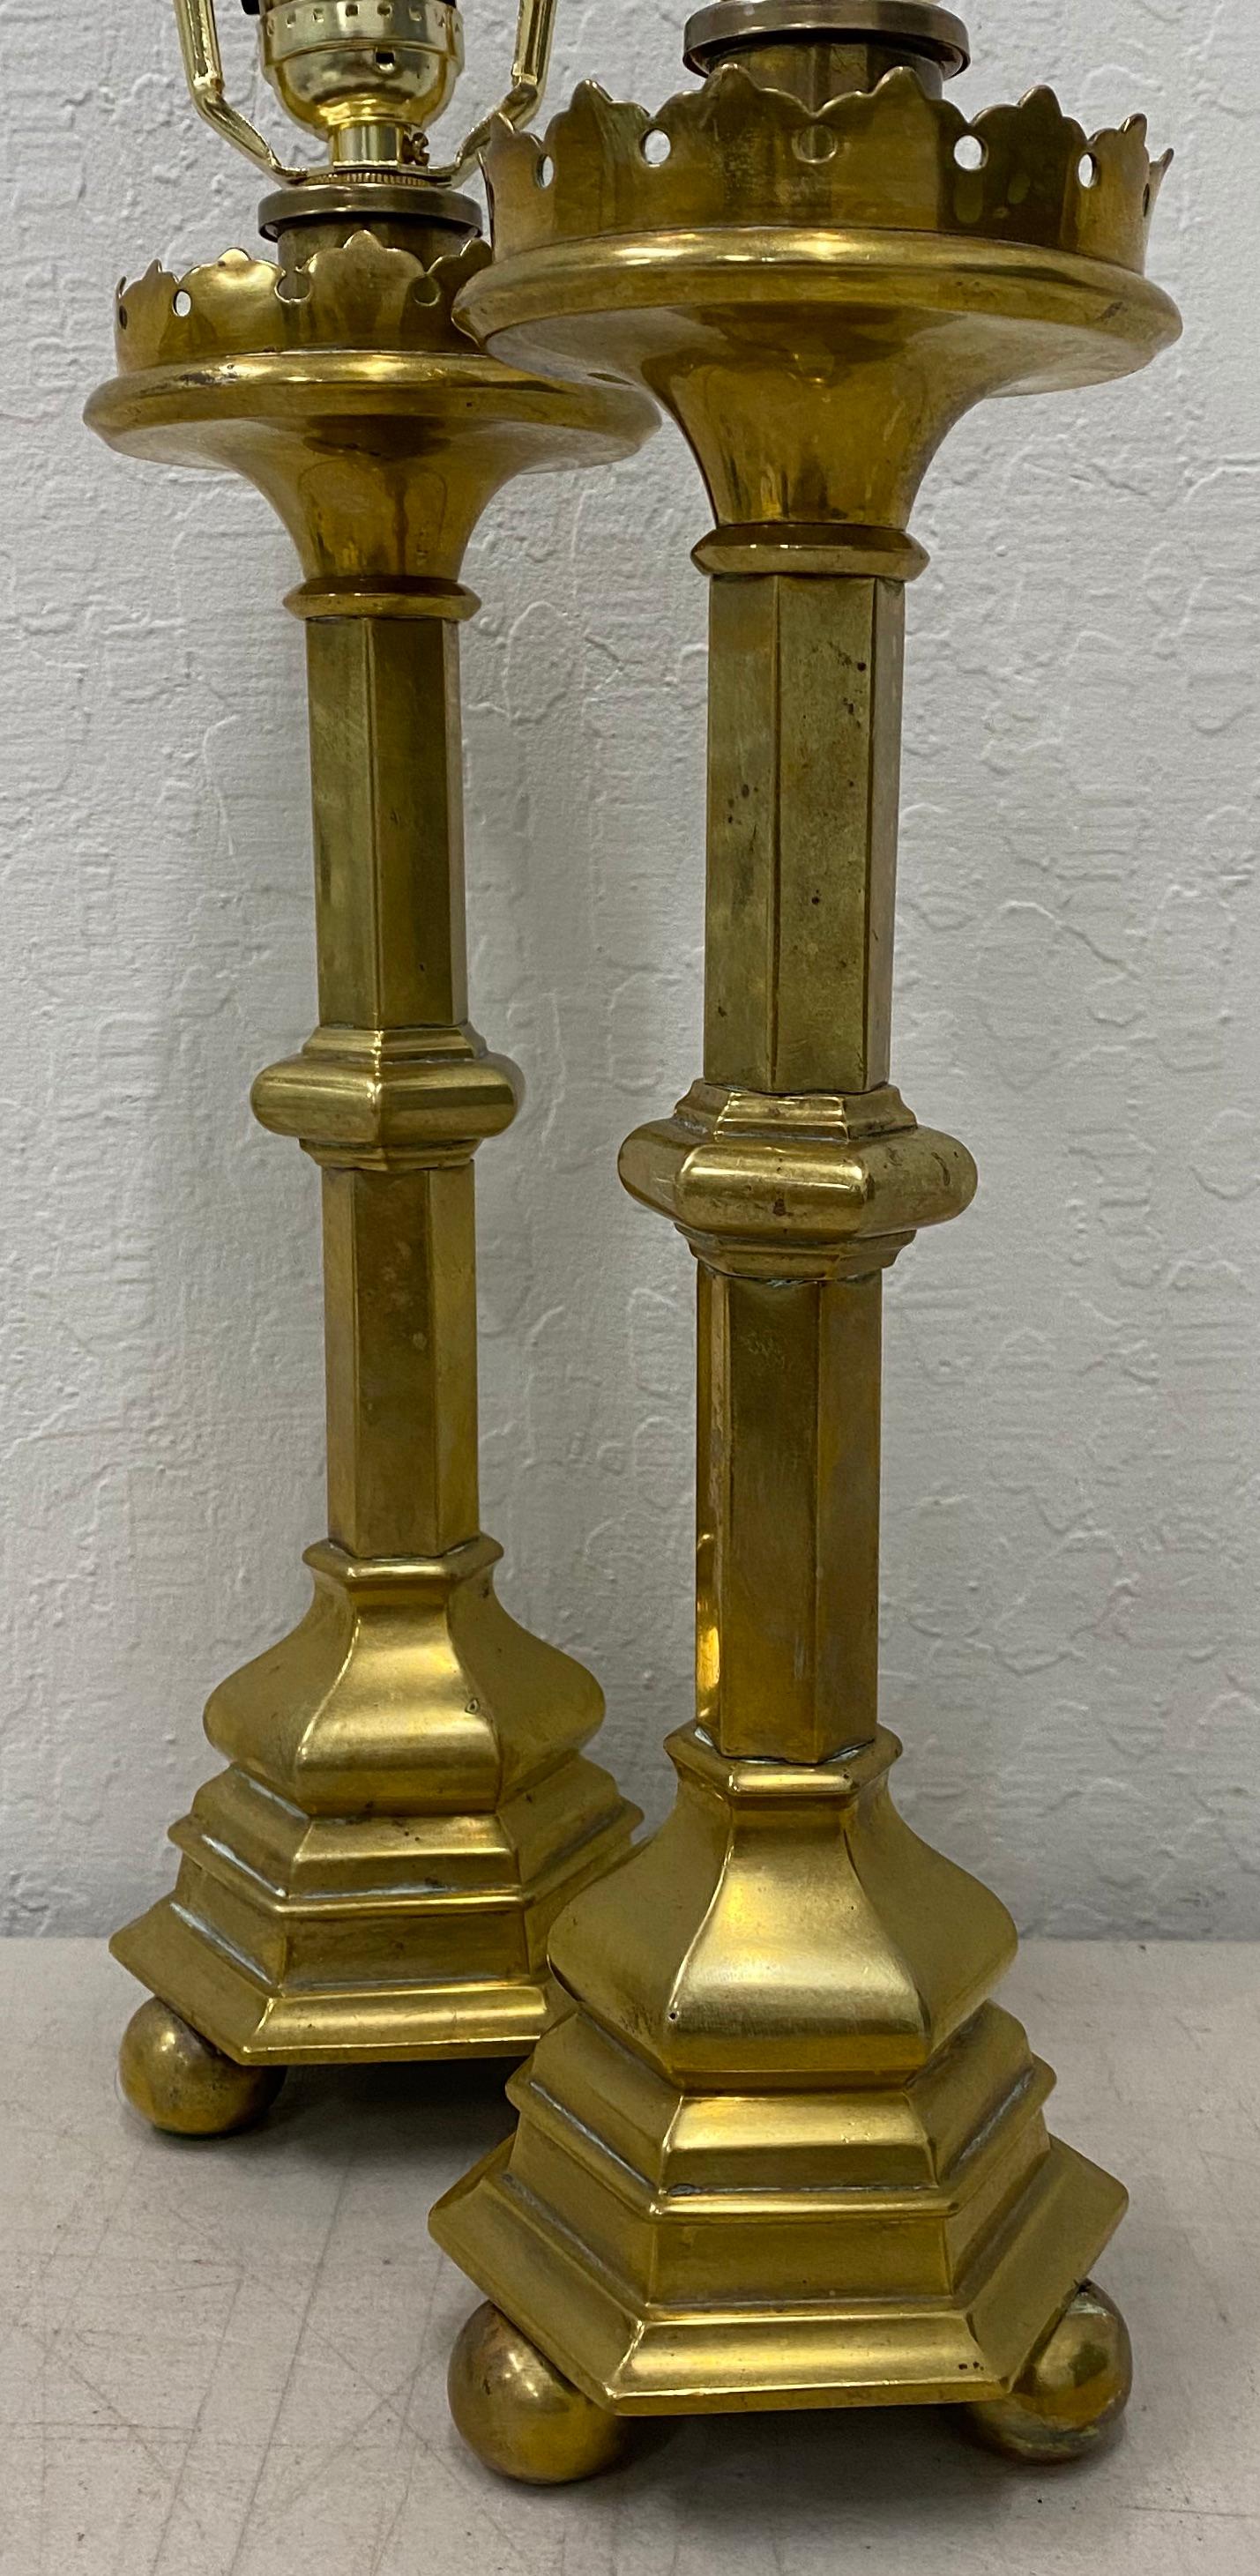 Lampes à huile en laiton du milieu du XIXe siècle converties en lampes de table

Mesures : 4